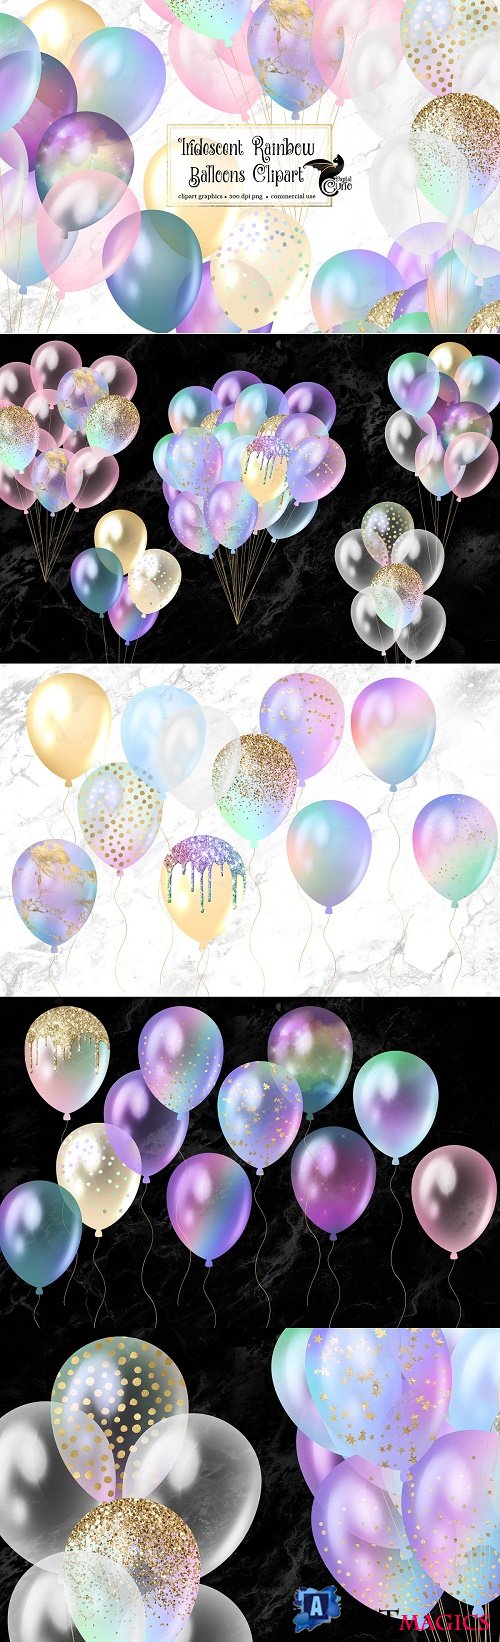 Iridescent Rainbow Balloons Clipart - 4460324